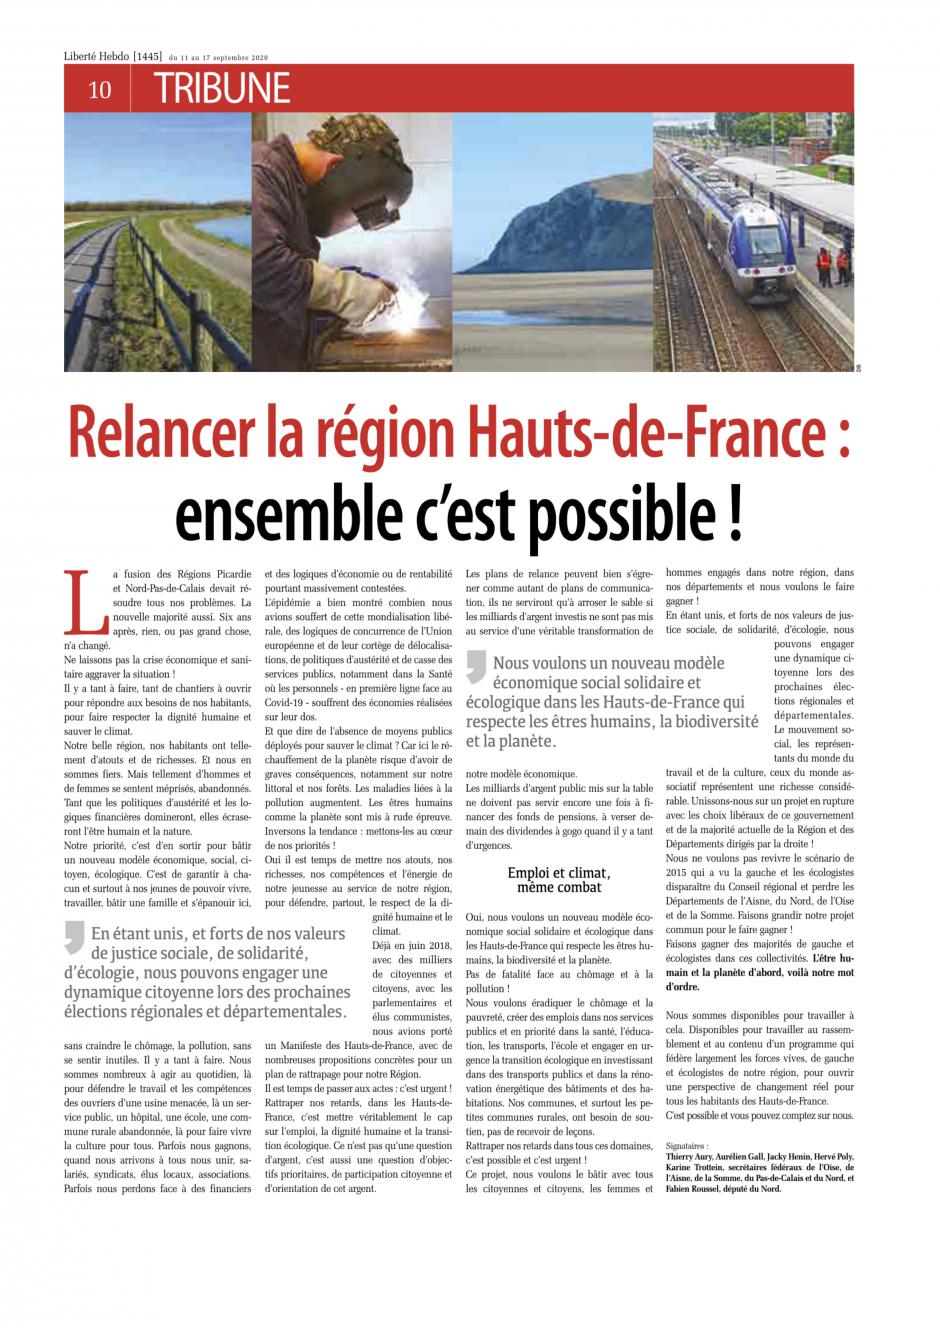 Relancer la région des Hauts-de-France : ensemble c'est possible !